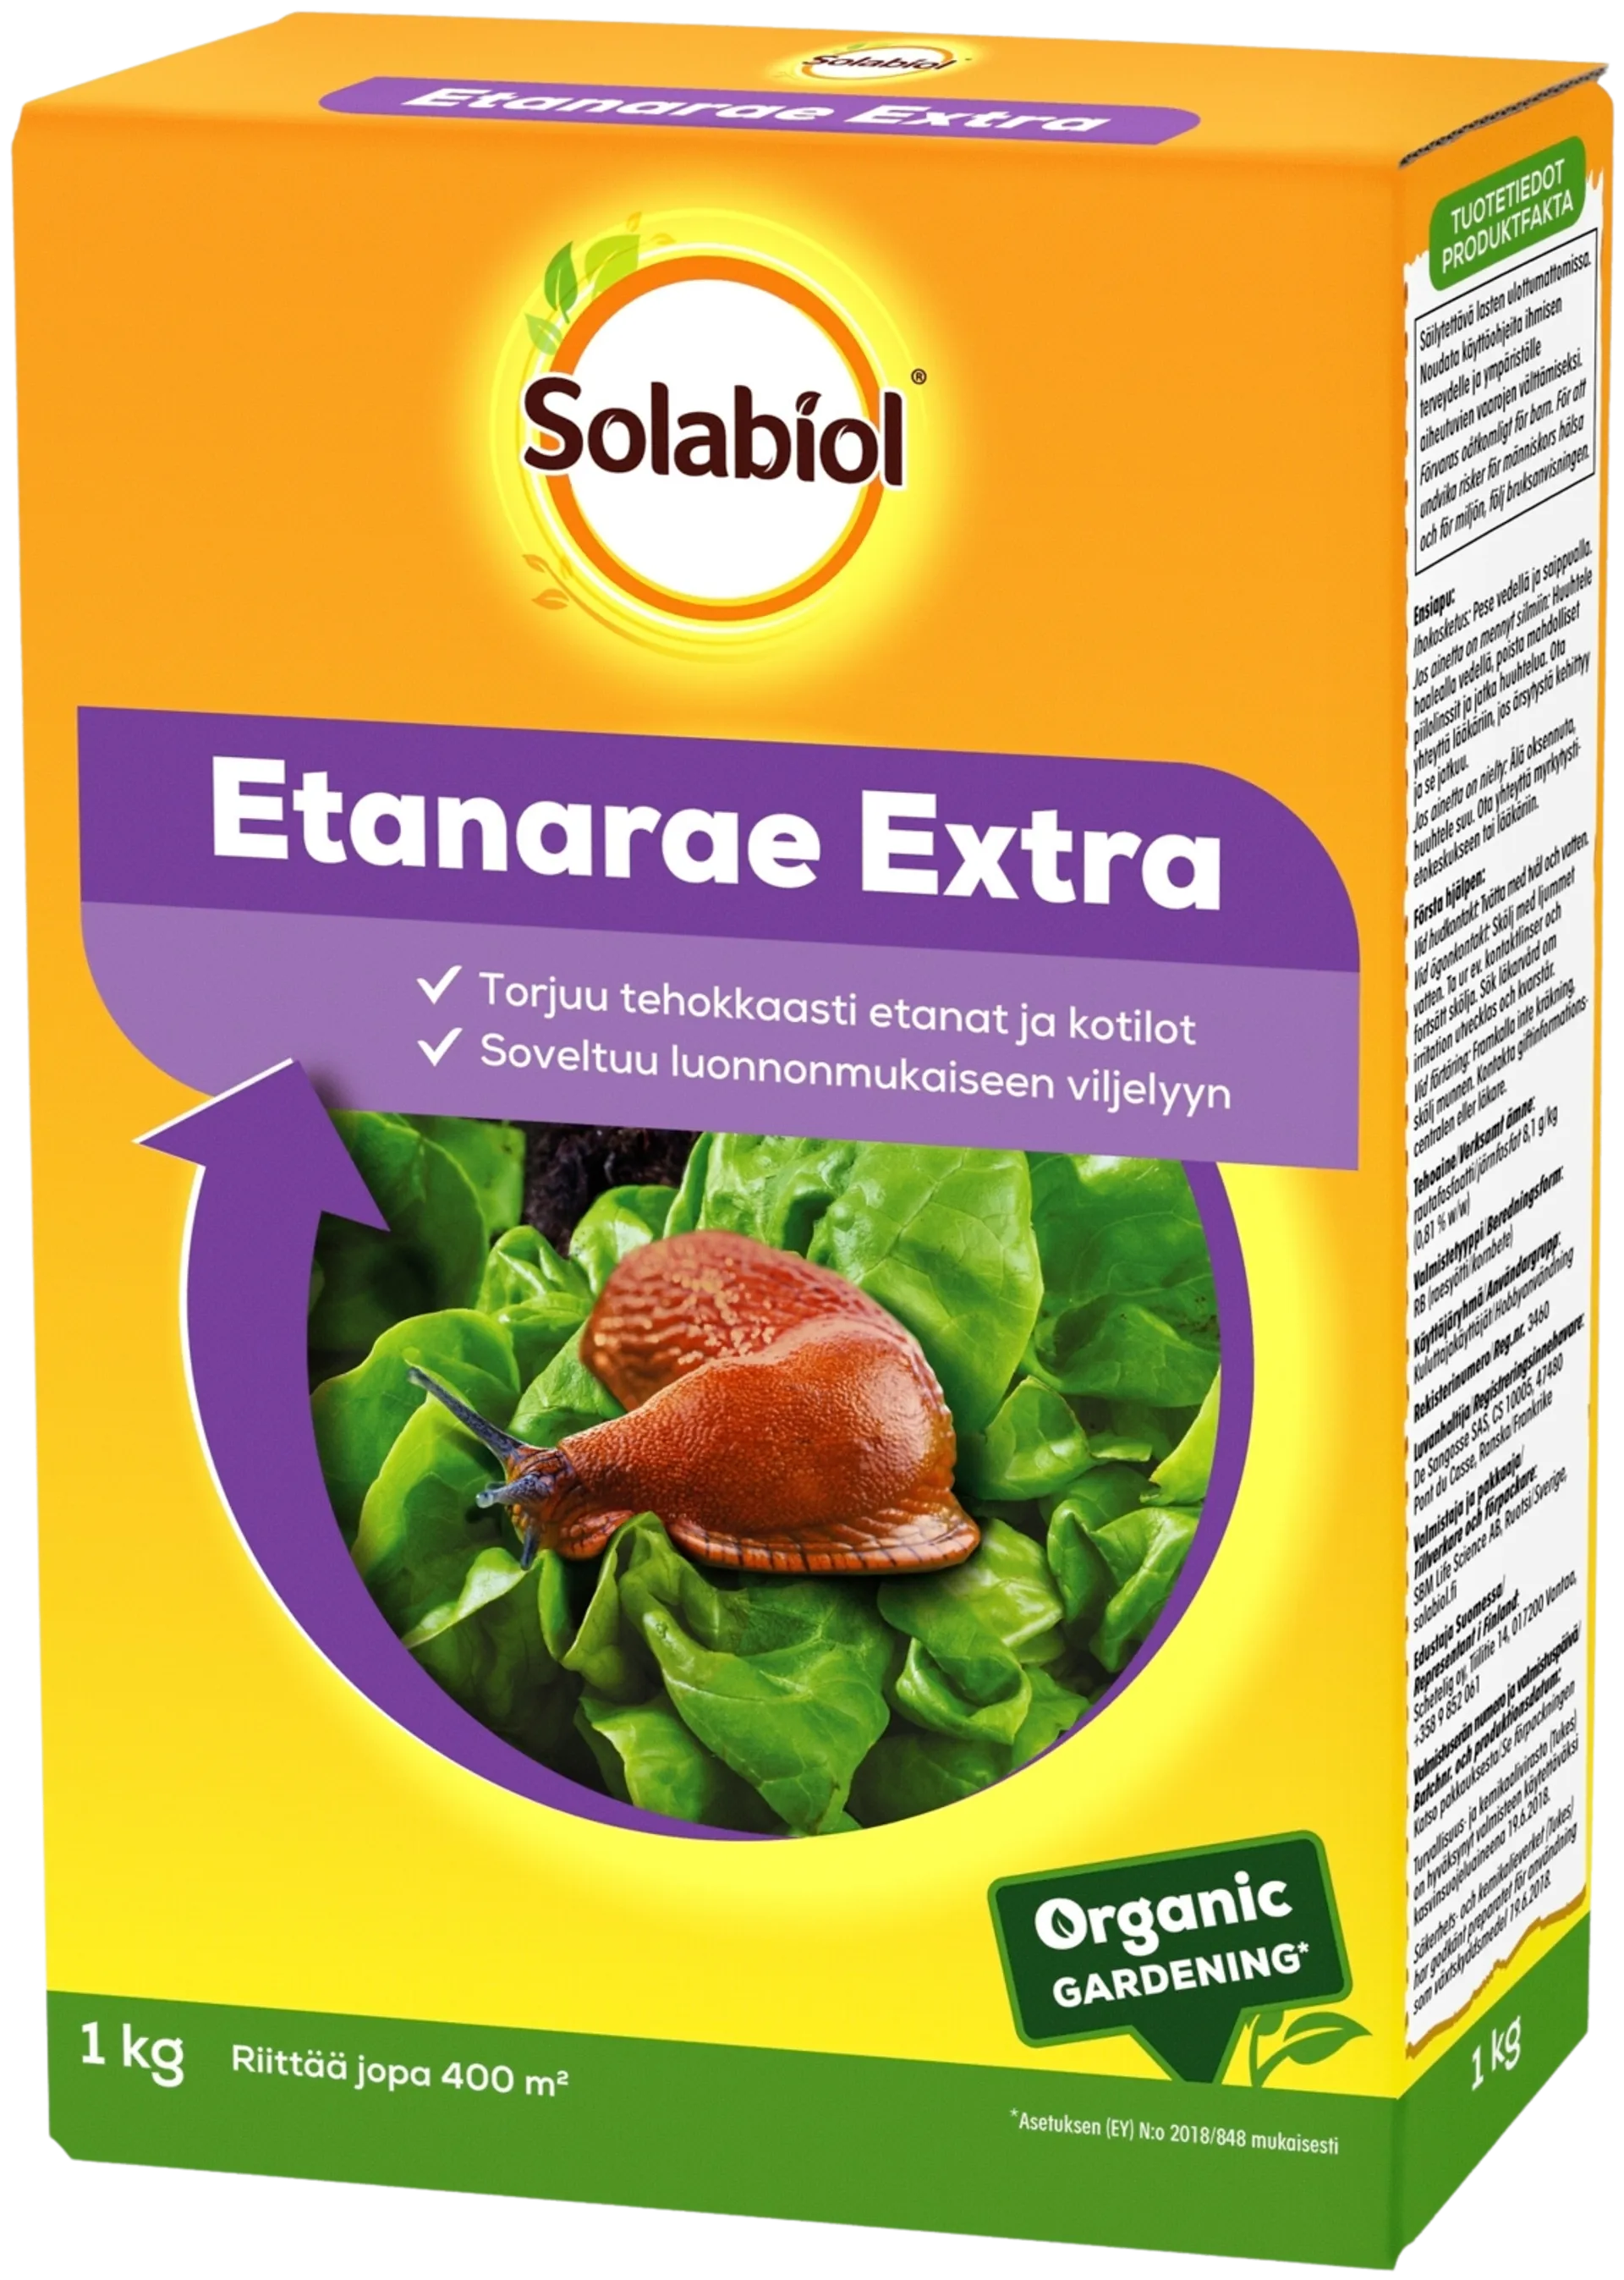 Solabiol Etanarae Extra 1 kg